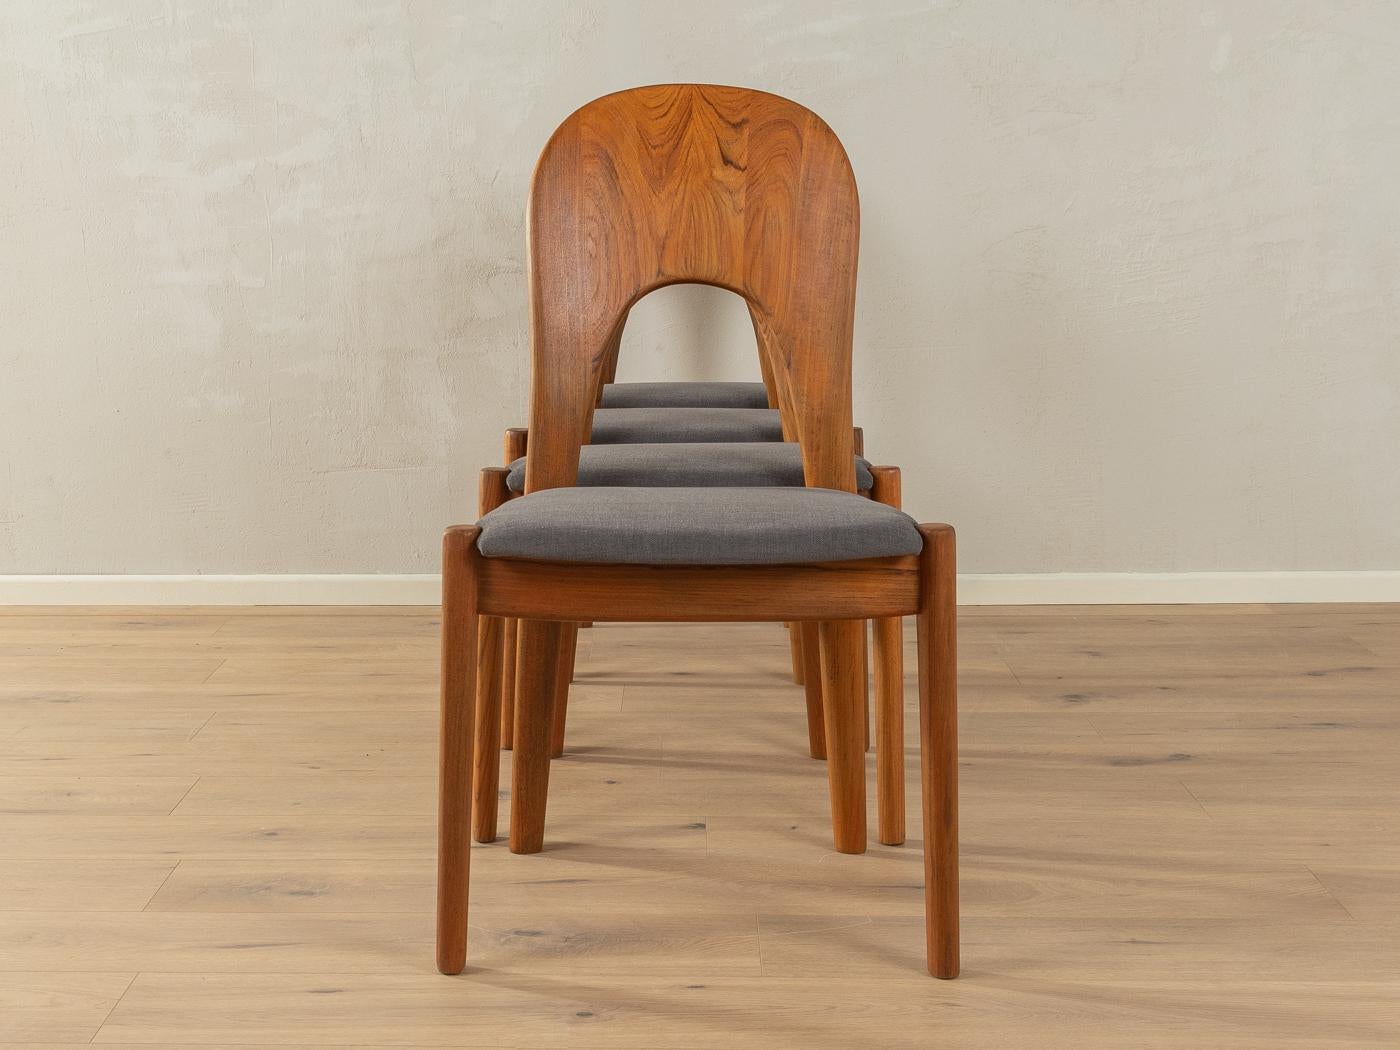 Klassische Esszimmerstühle aus den 1960er Jahren von Niels Koefoed für Koefoed's Hornslet. Massiver Rahmen aus Teakholz. Die Stühle wurden neu gepolstert und mit einem hochwertigen Polsterstoff in Grau bezogen. Das Angebot umfasst vier